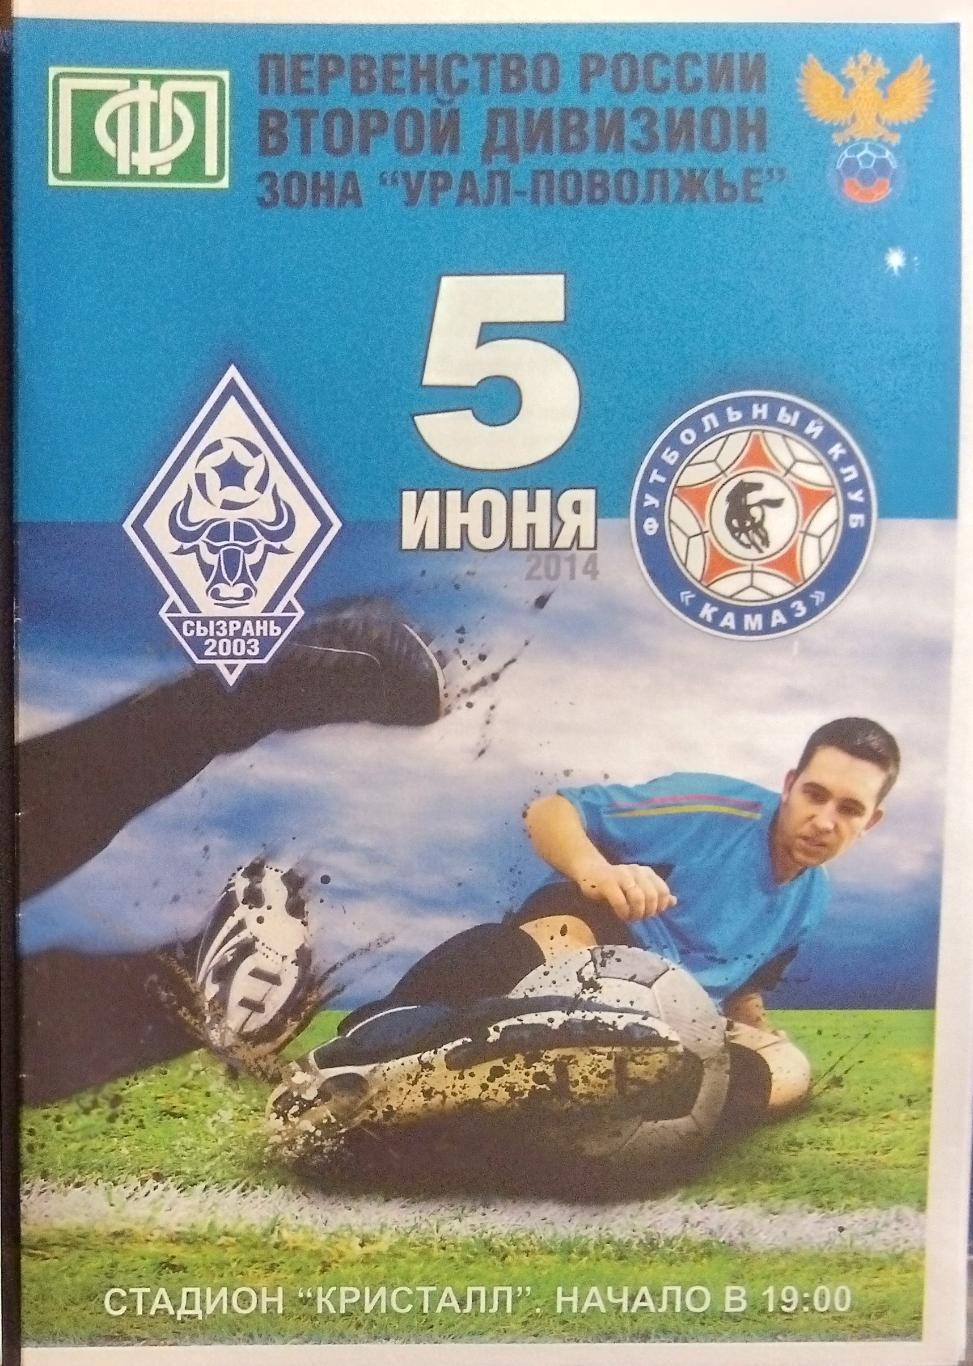 Сызрань-2003 - ФК КамАЗ- 2013/2014